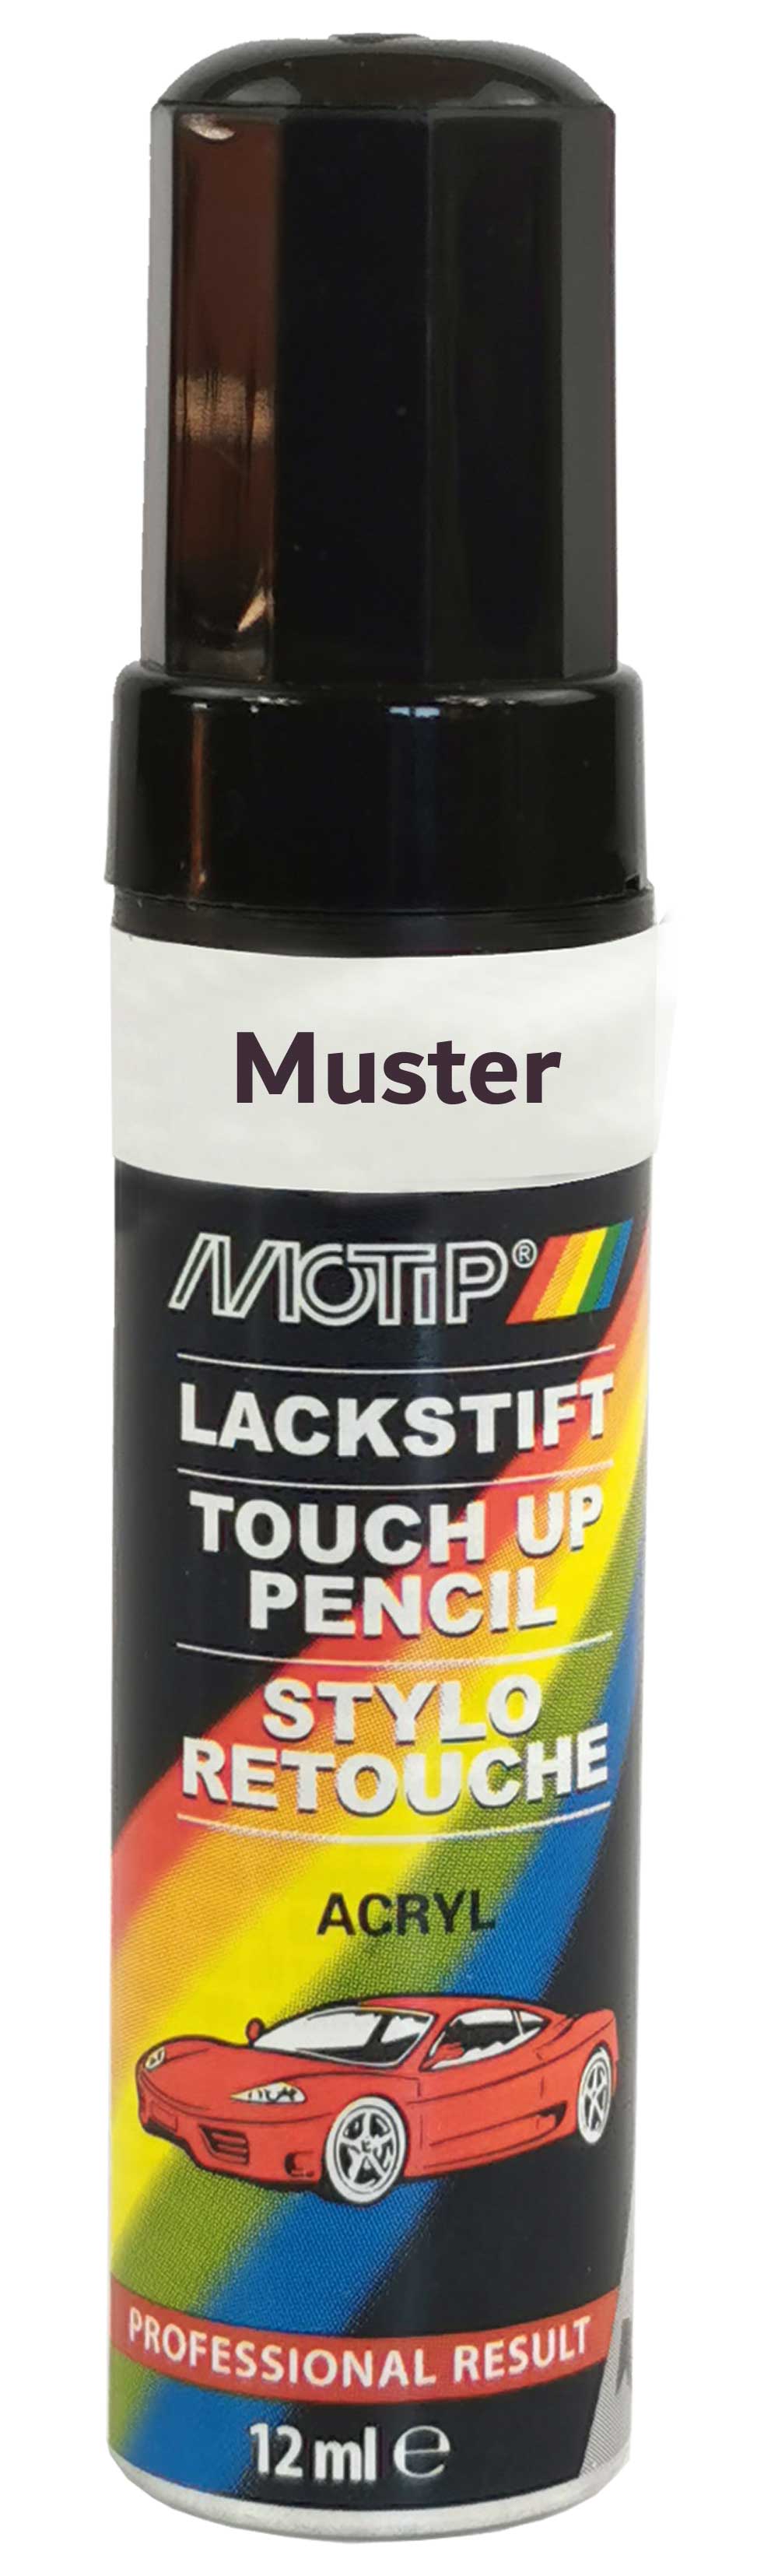 Motip Lack-Stift beige 12ml 955454